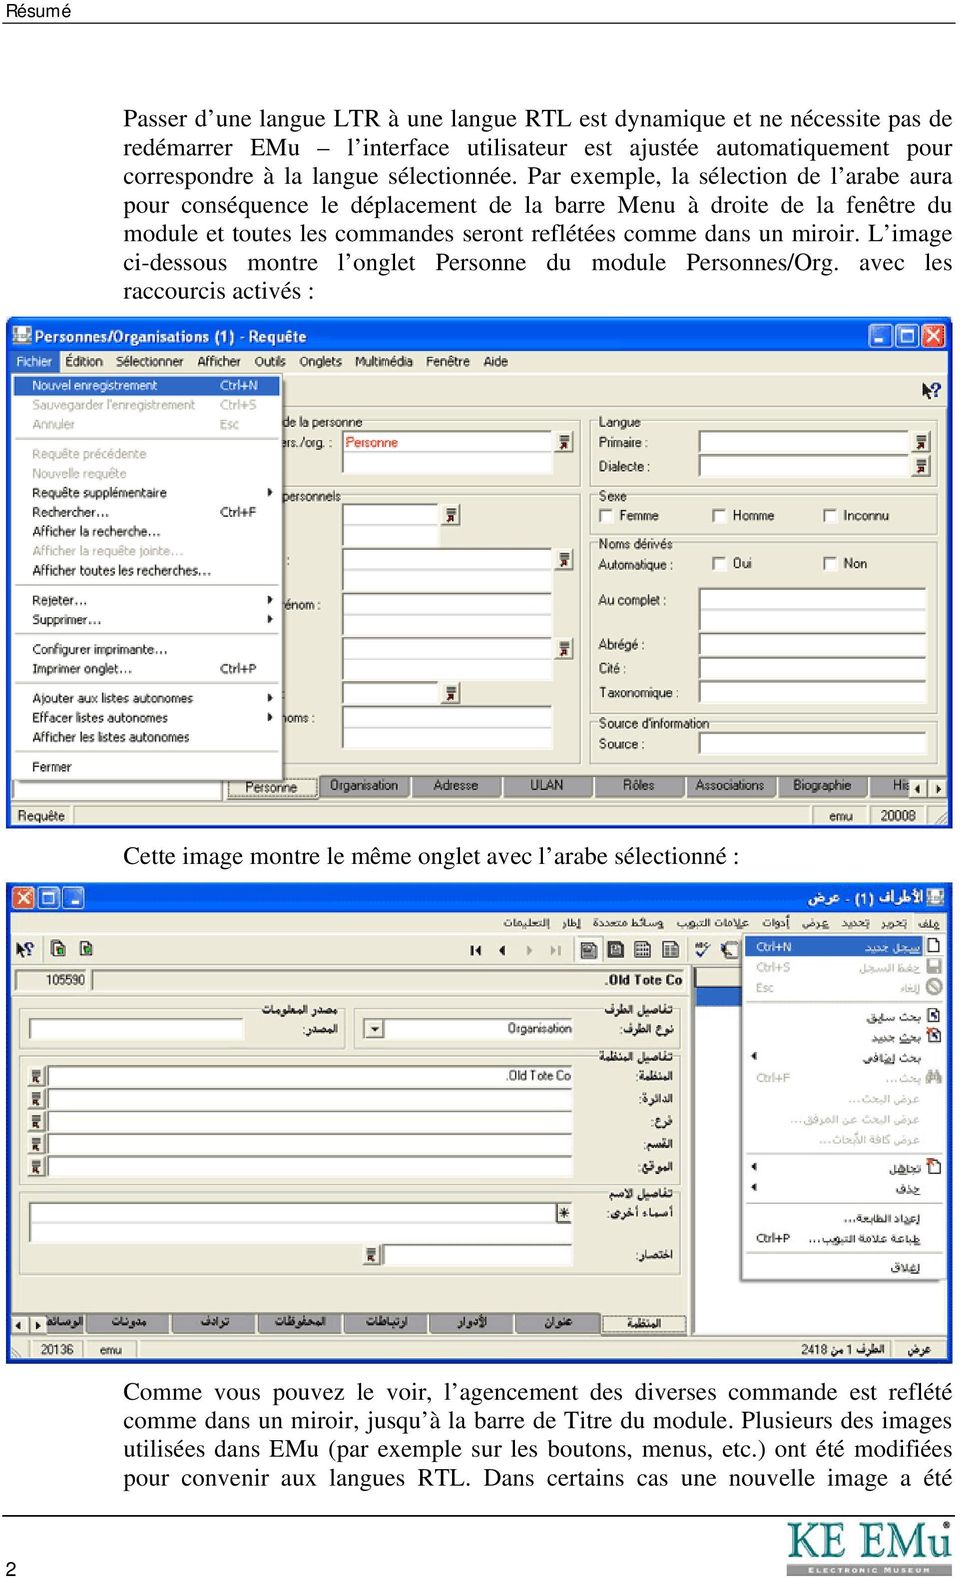 la langue arabe pour windows xp sweet 5.1 gratuit